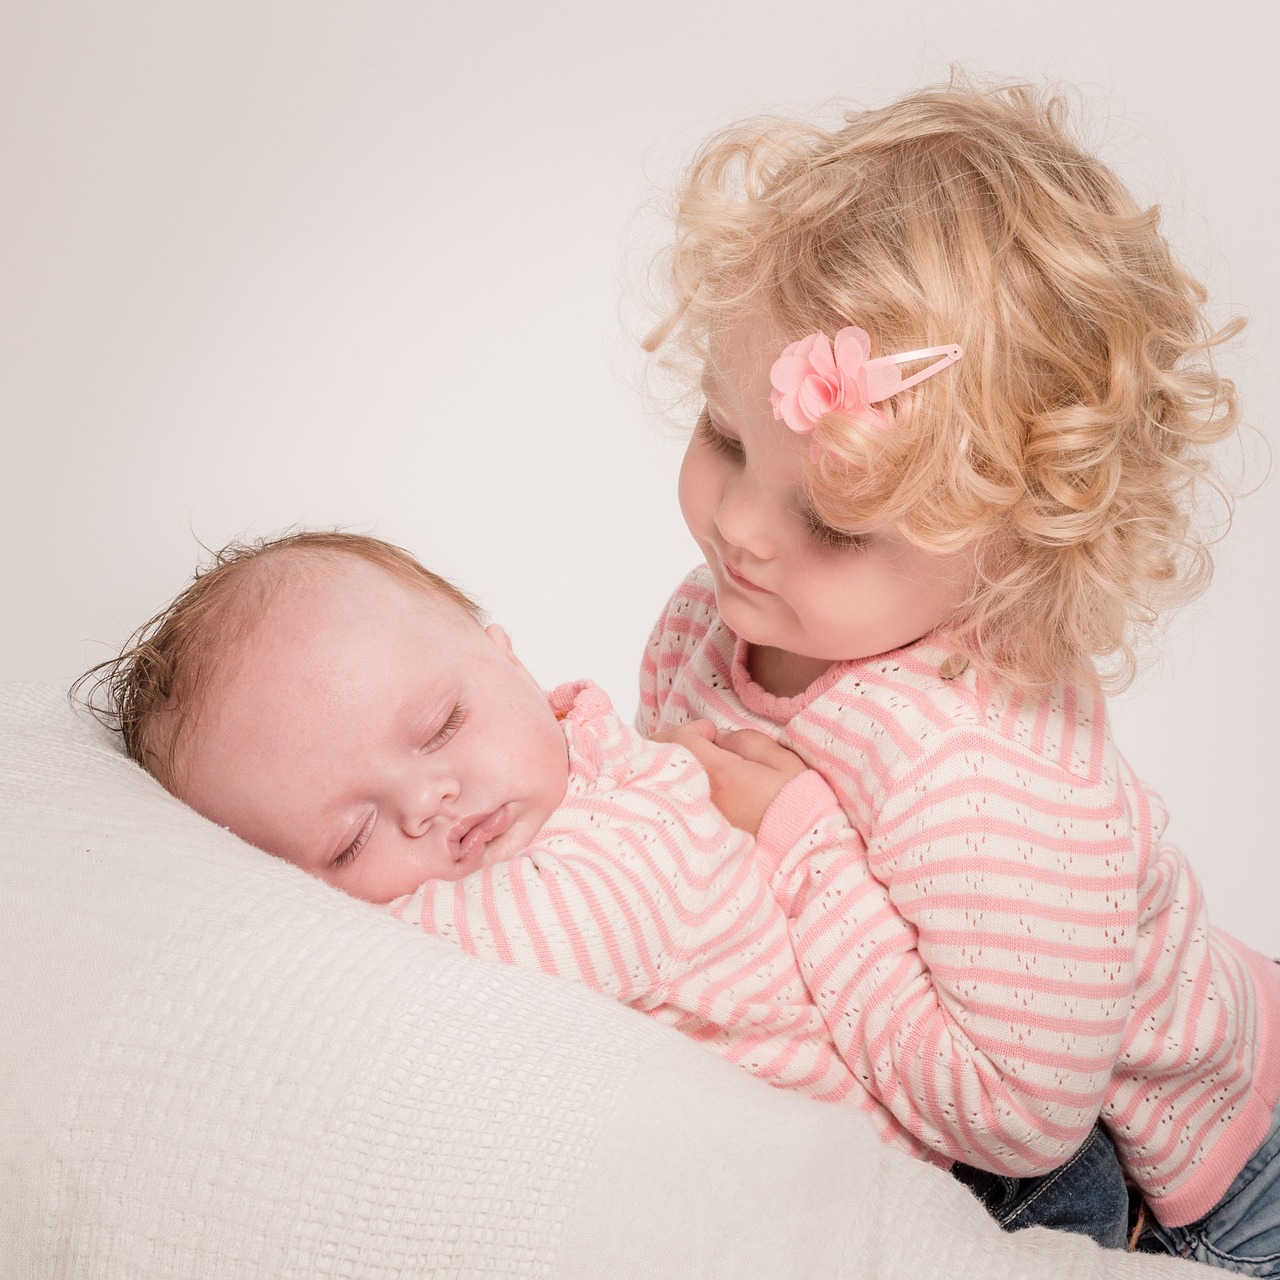 Una niña mirando a su hermanita dormida | Fuente: Pixabay